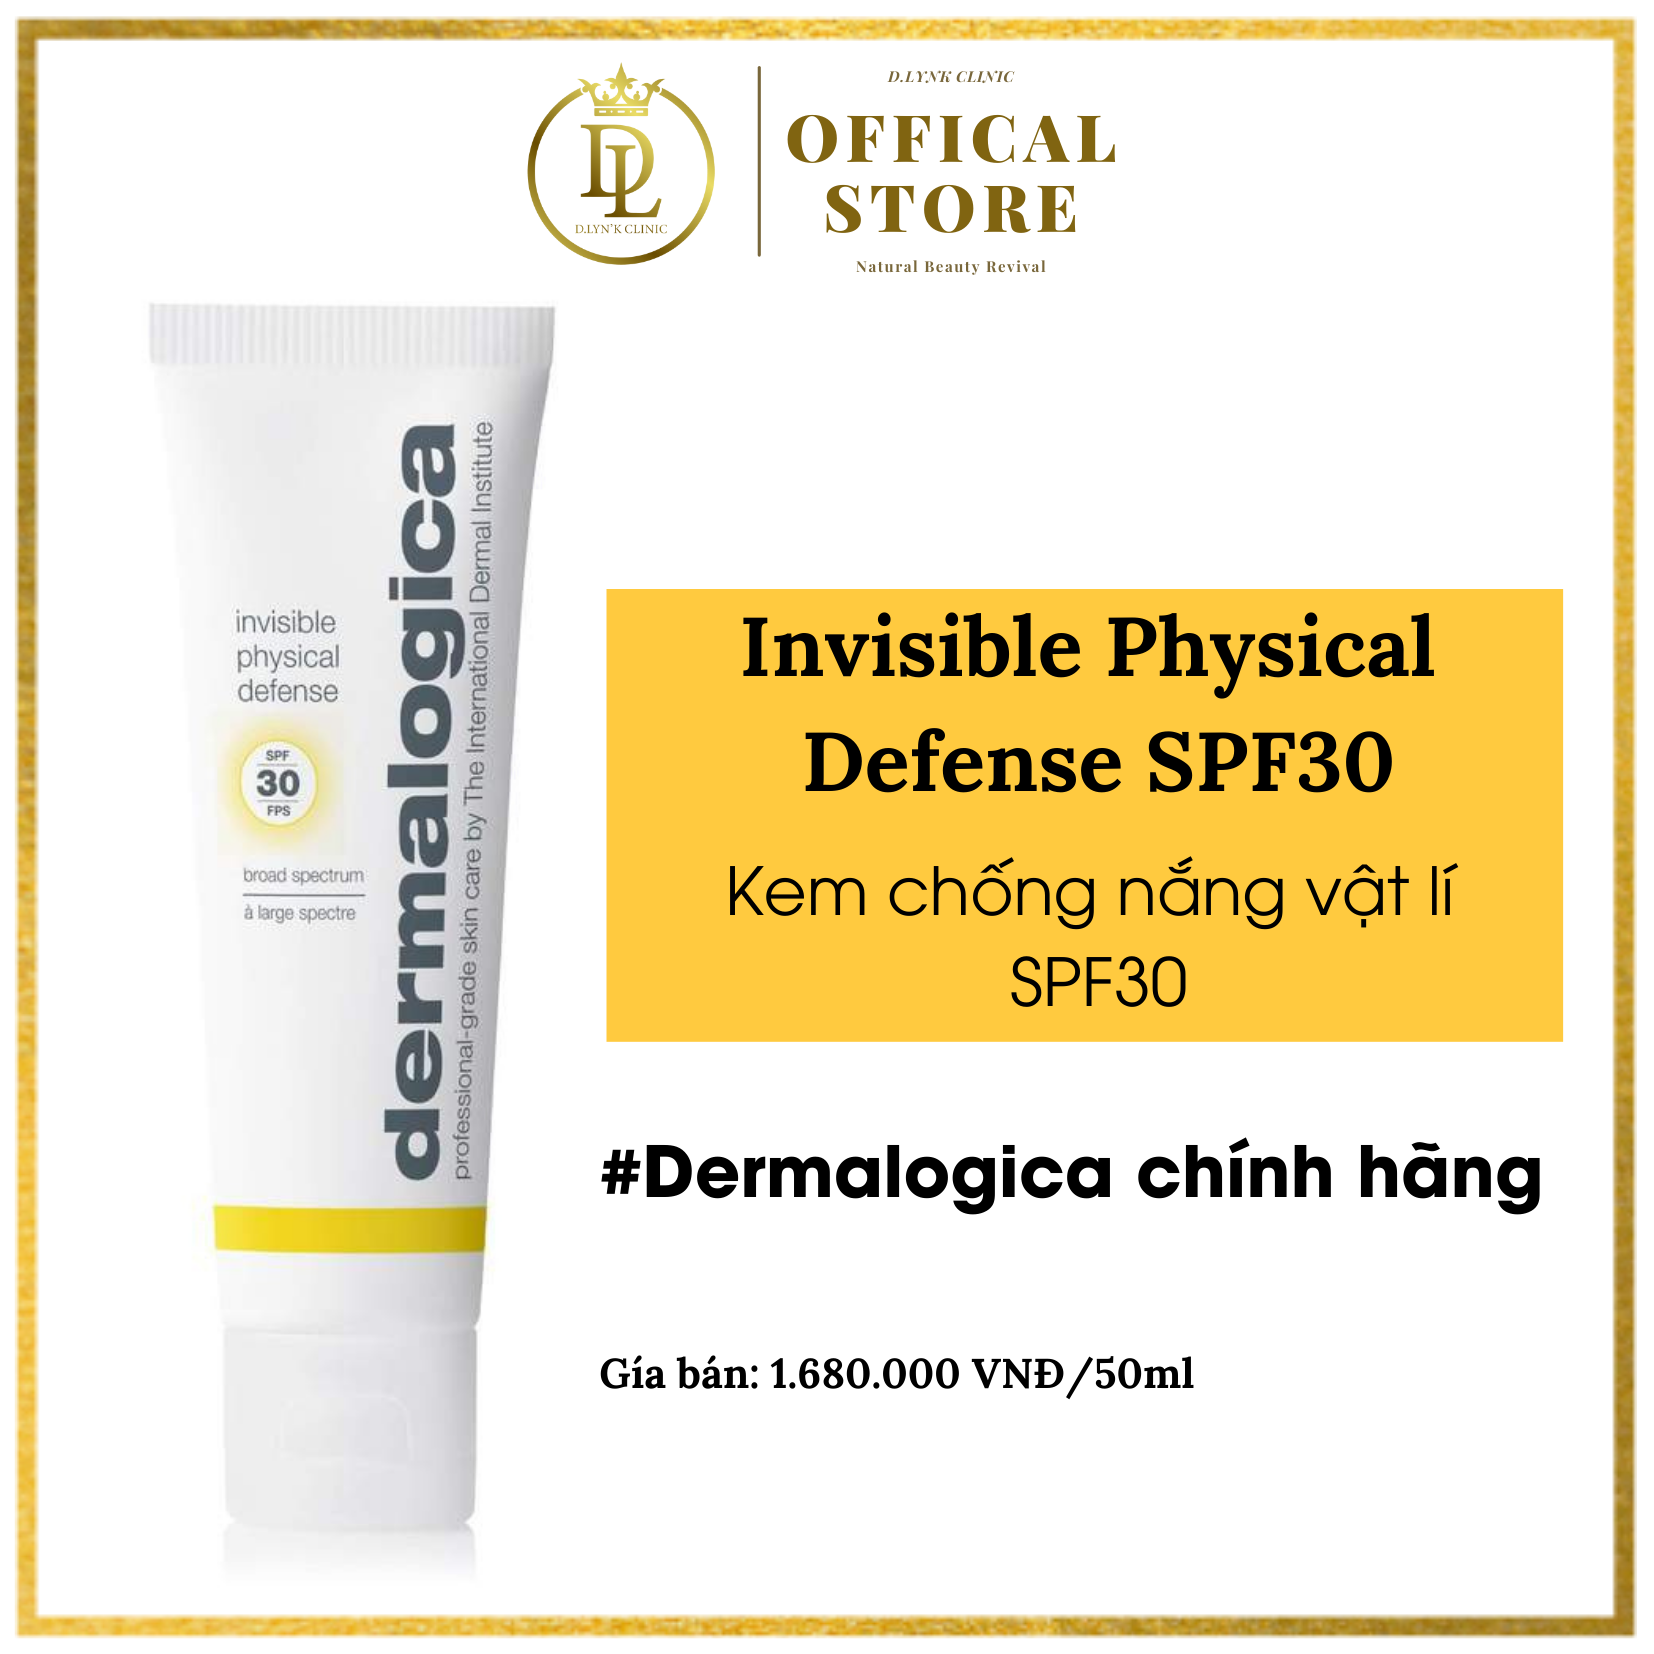 Kem chống nắng vật lý giúp vùng da cổ luôn săn chắc Dermalogica Physical Invisible Defense SPF30 50ml